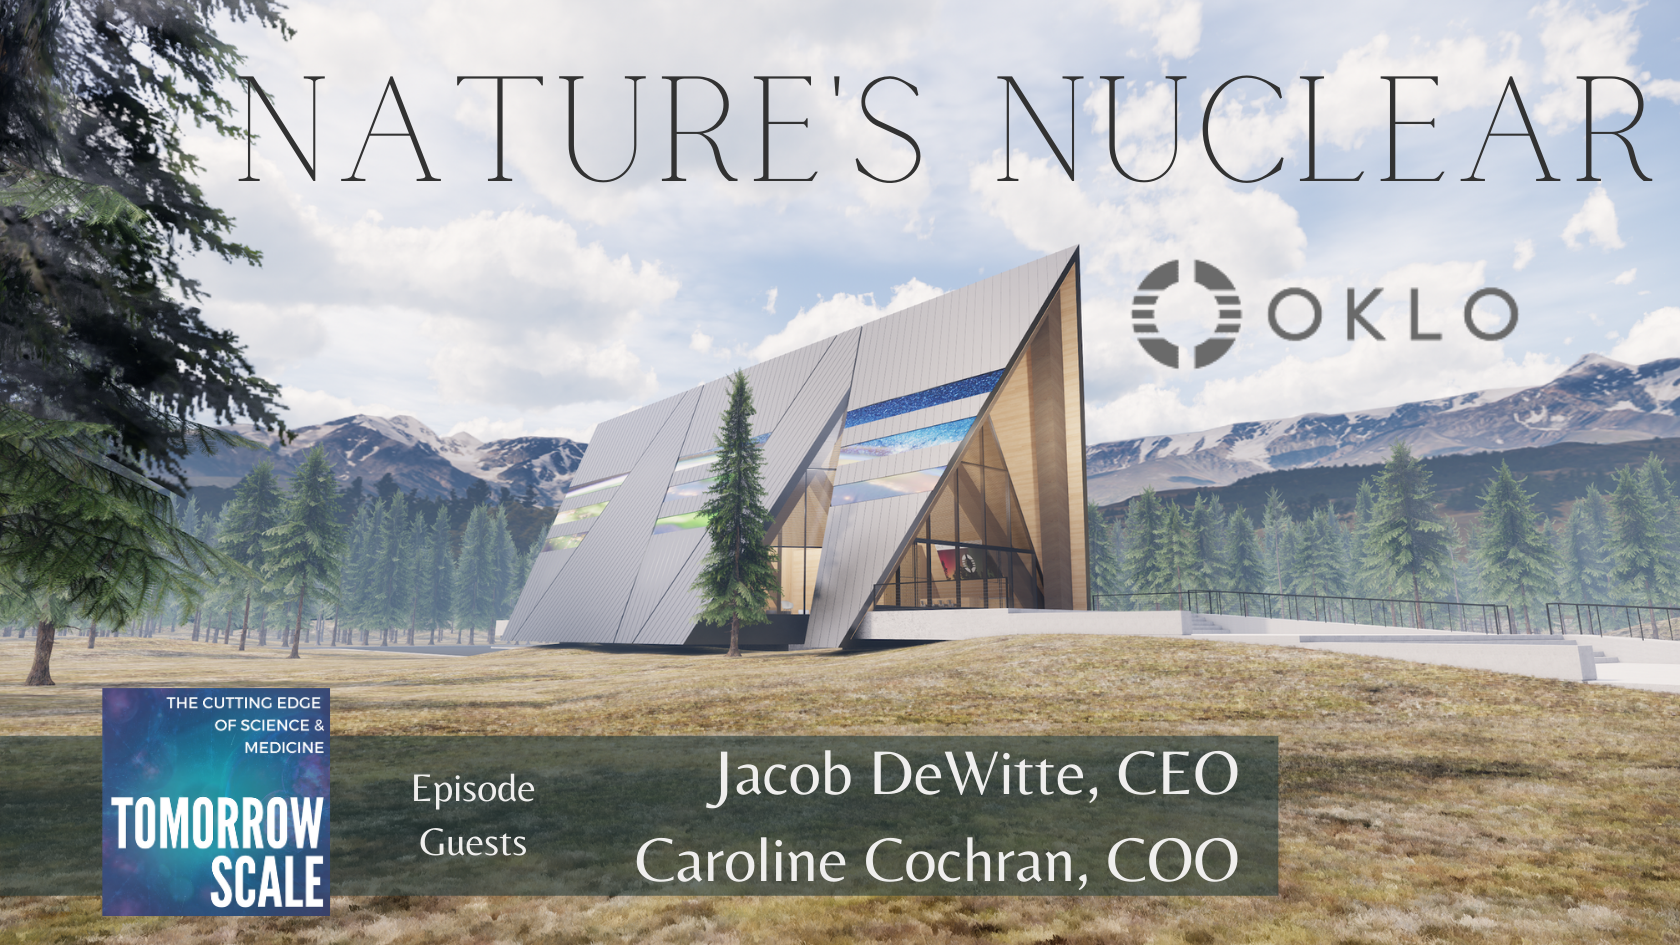 Nature's Nuclear - Oklo, Inc.